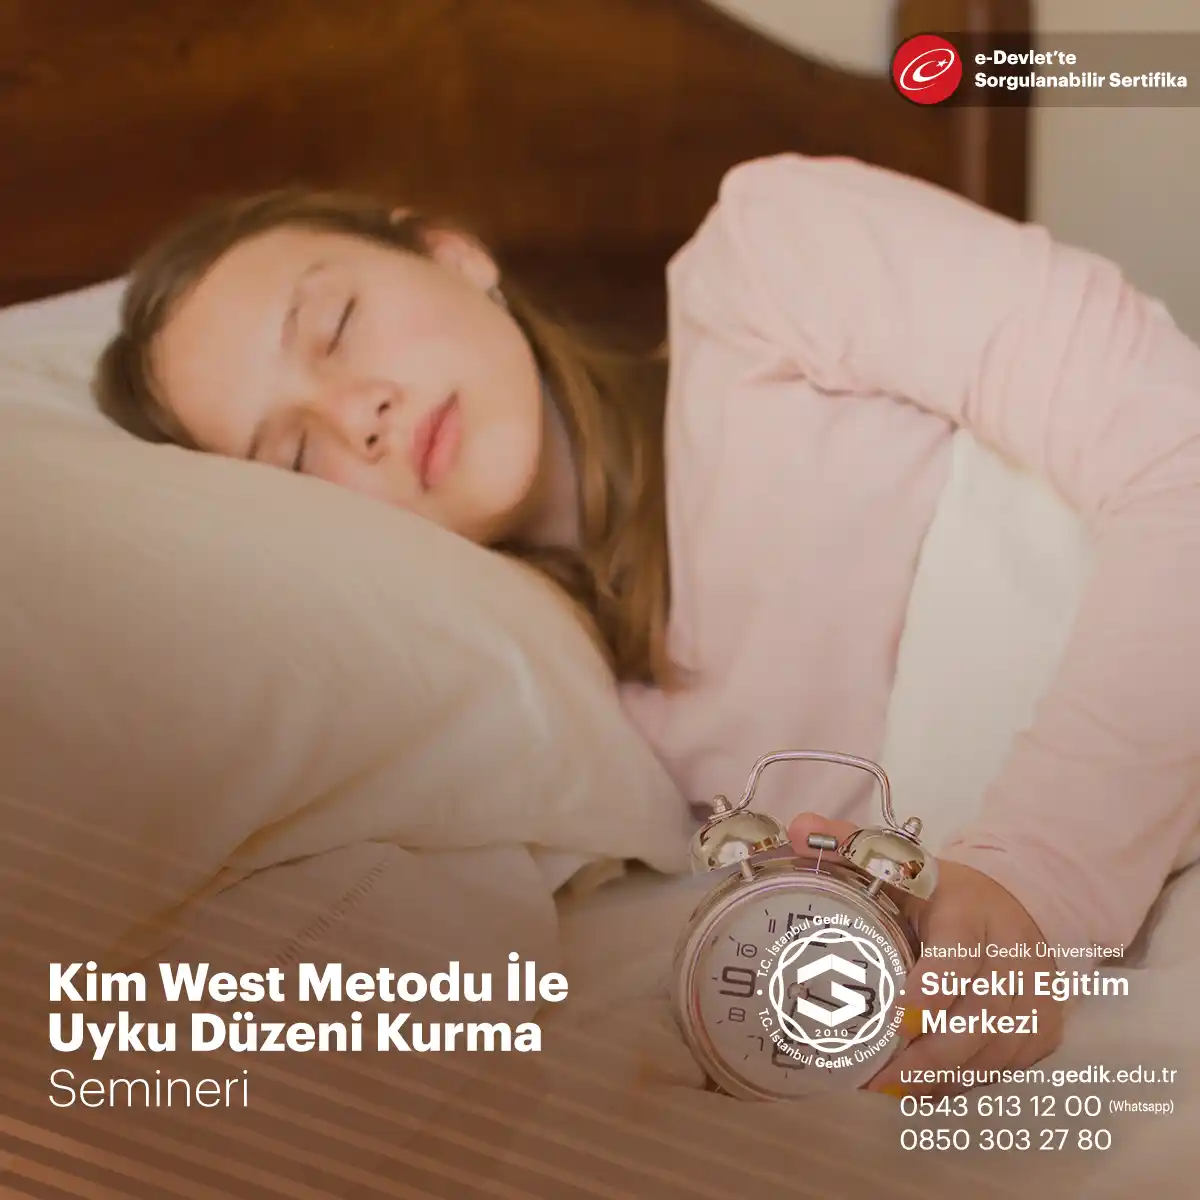 Kim West Metodu, aynı zamanda "The Sleep Lady Shuffle" olarak da bilinir, bebeklerin uyku düzenlerini düzene sokmak için bir yöntemdir.